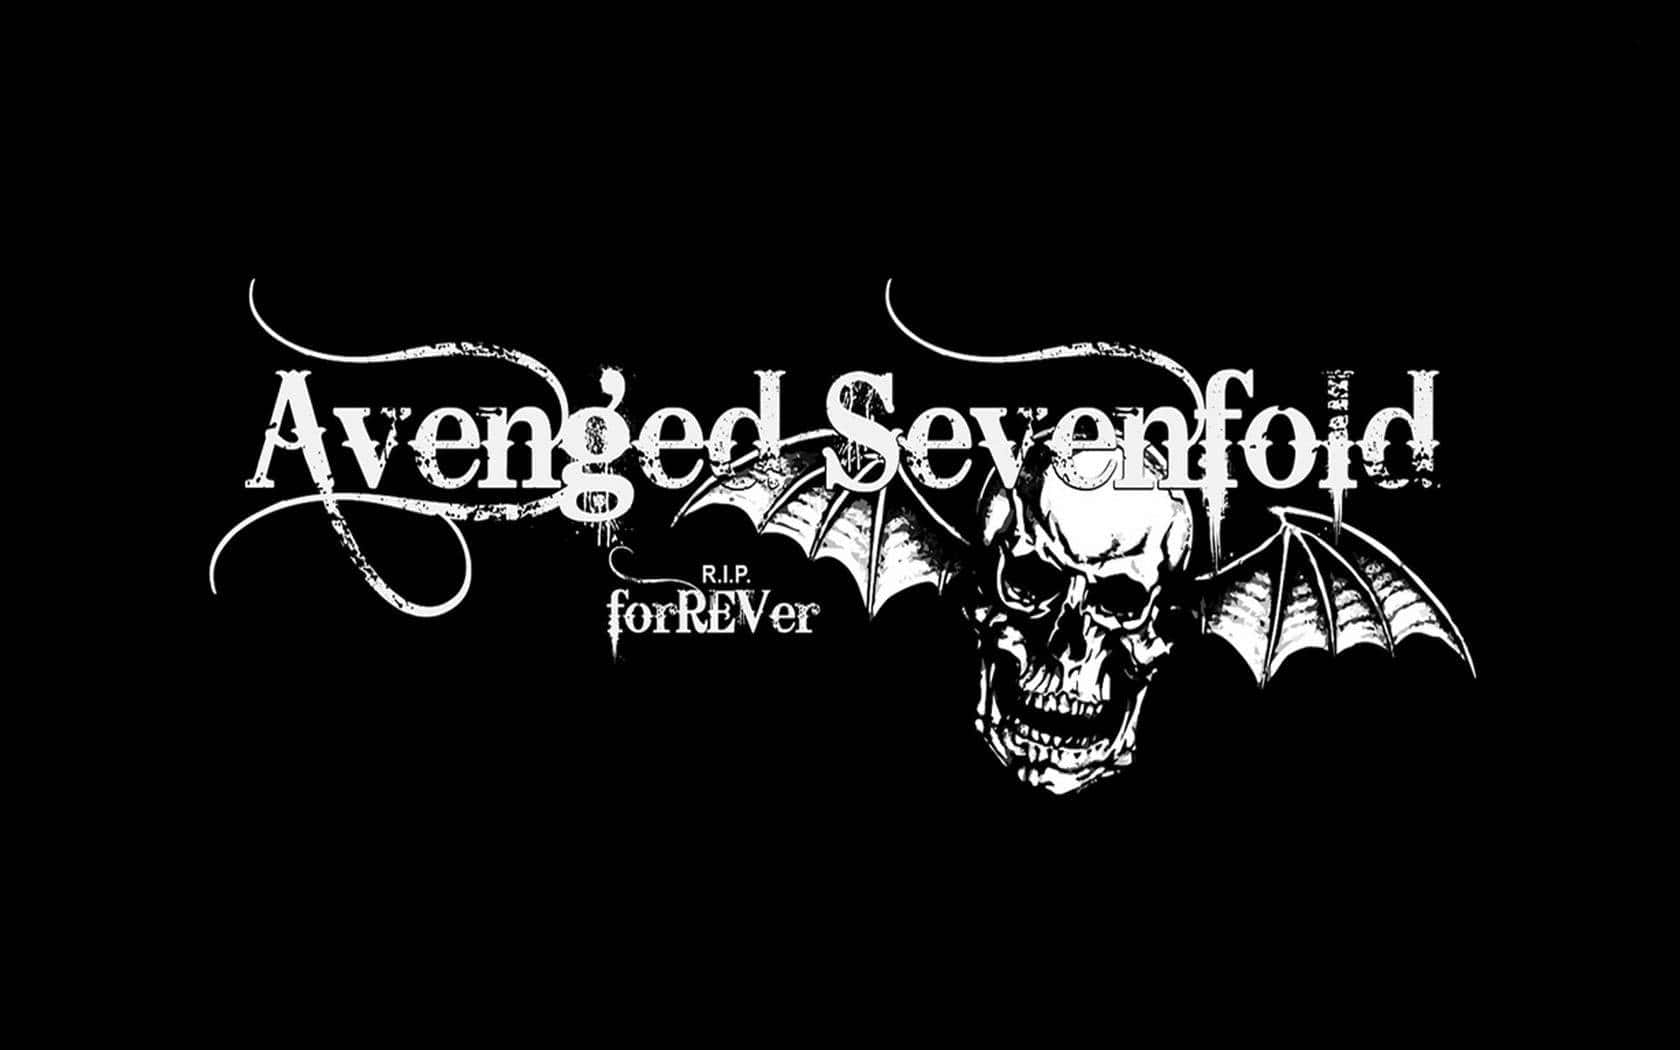 Avengedsevenfold-logo Auf Schwarzem Hintergrund. Wallpaper